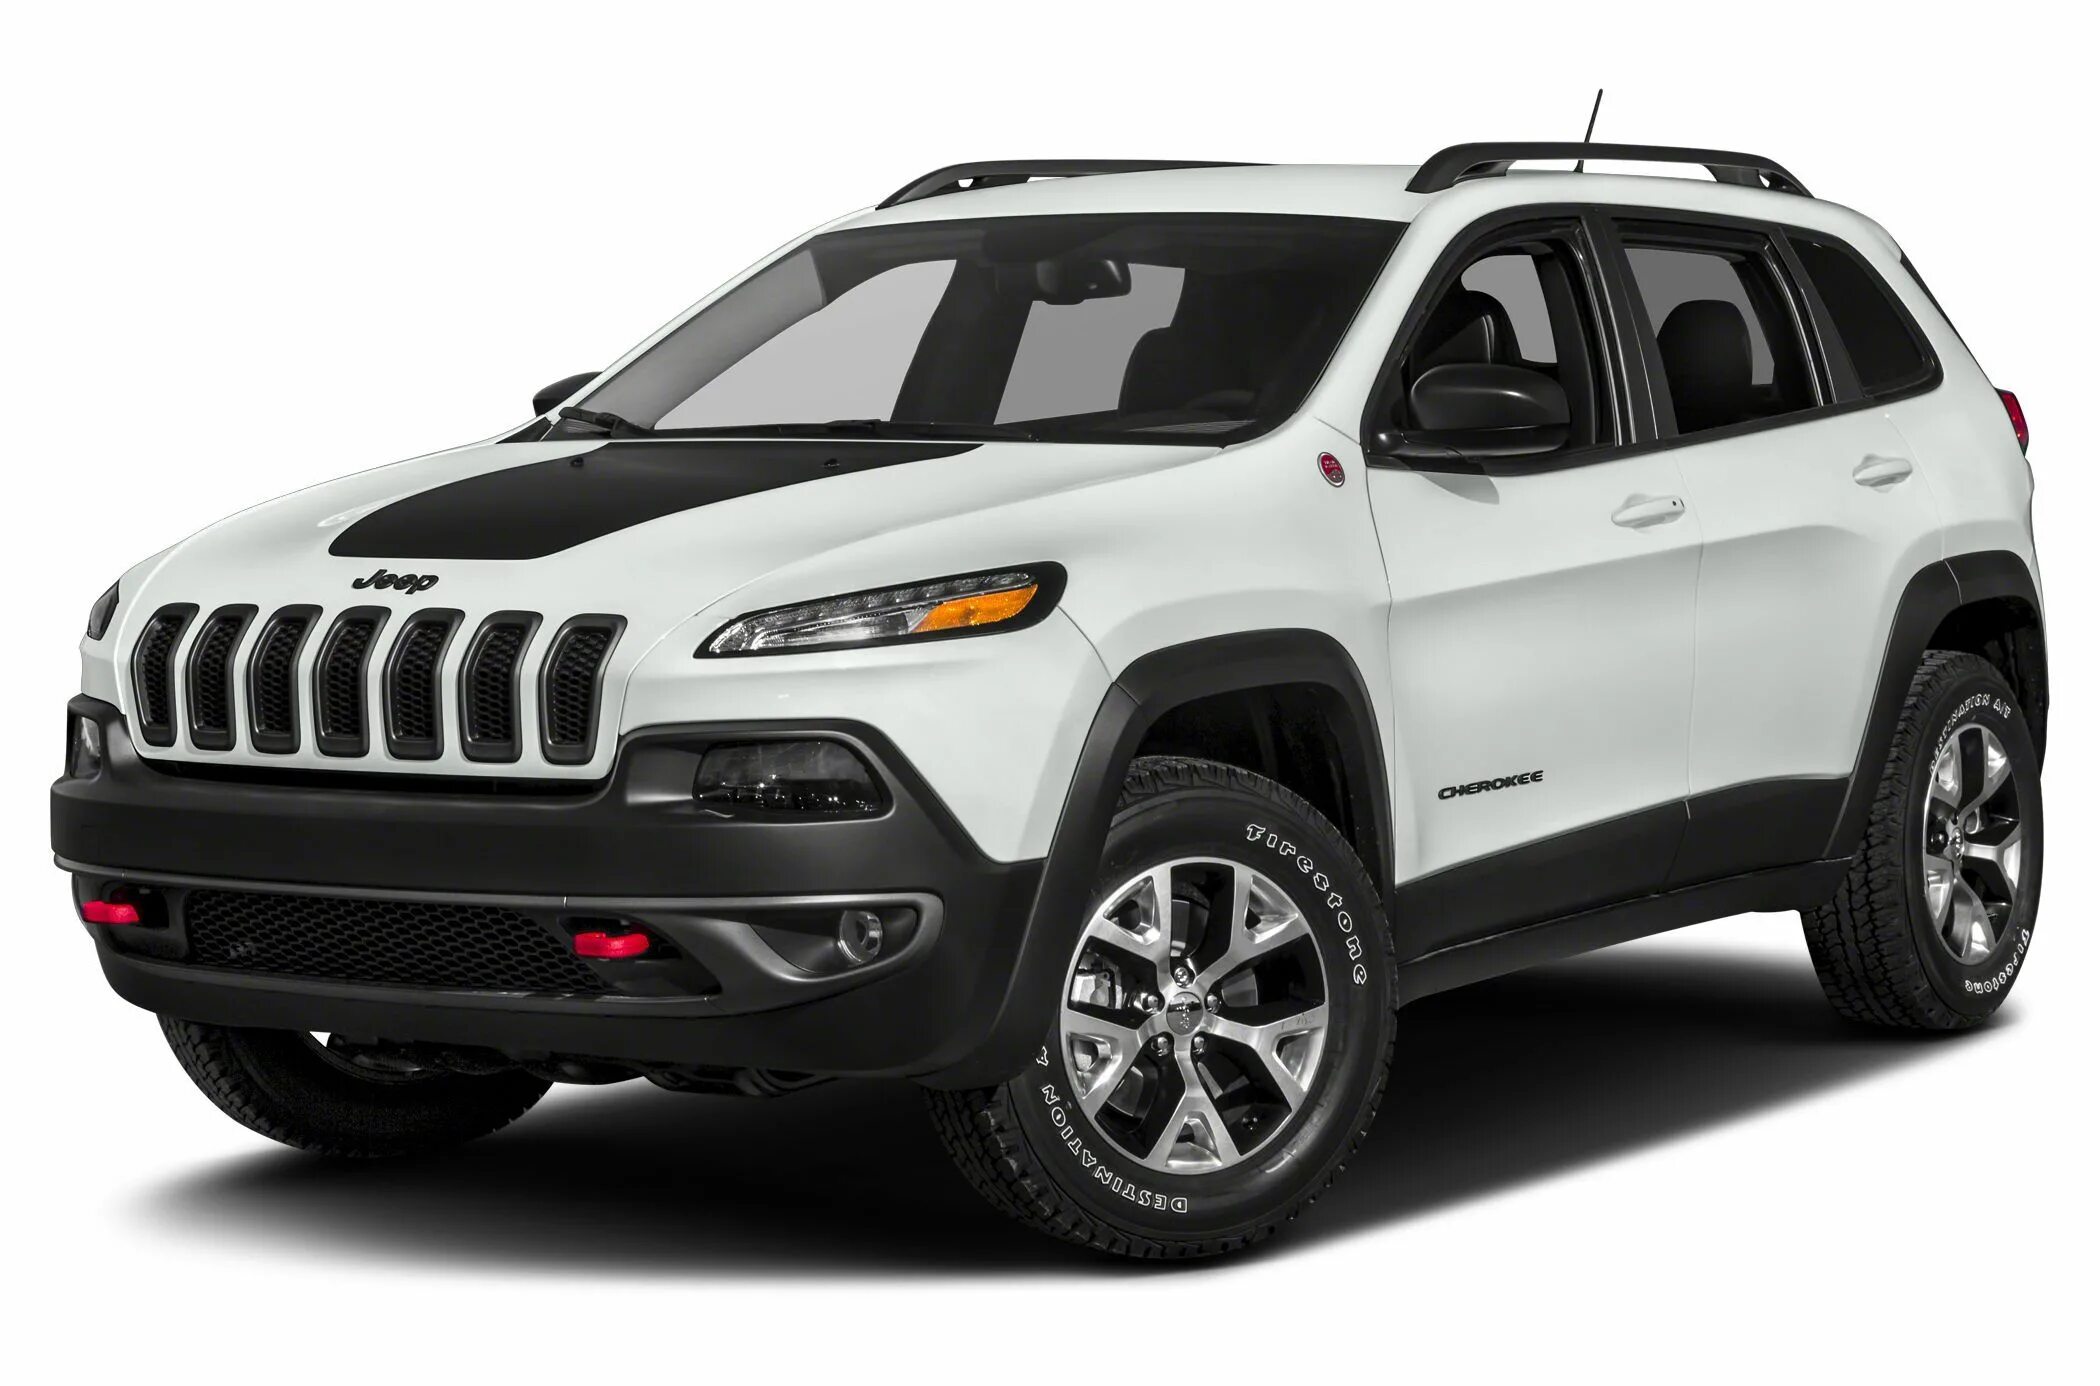 Cherokee trailhawk. Jeep Cherokee Trailhawk 2018. Jeep Grand Cherokee Trailhawk 2021. Jeep Cherokee Trailhawk 2014. Jeep Cherokee Trailhawk 2016.